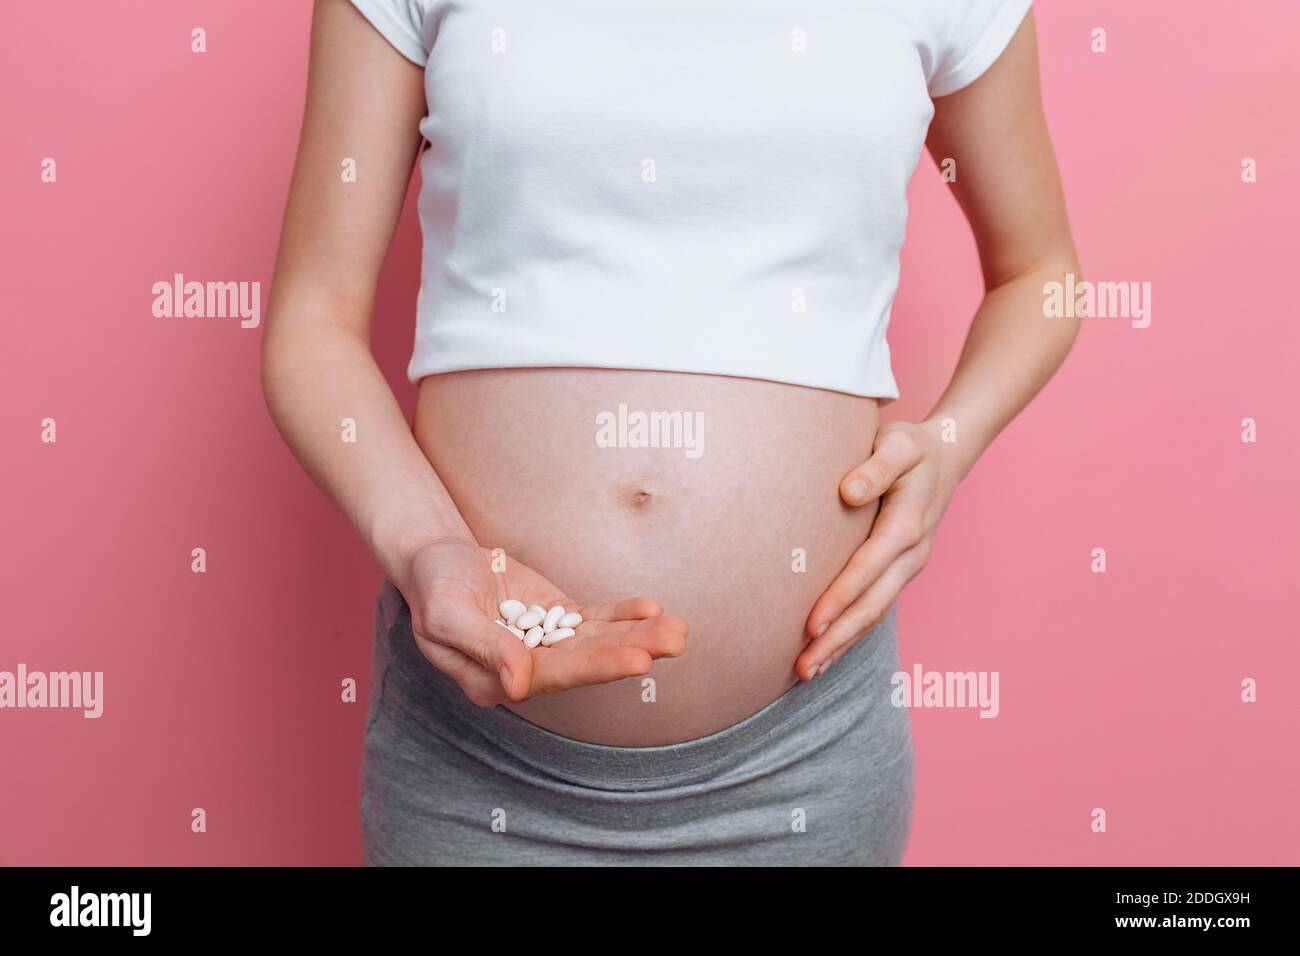 Vientre de una mujer embarazada que sostiene una mano bajo el